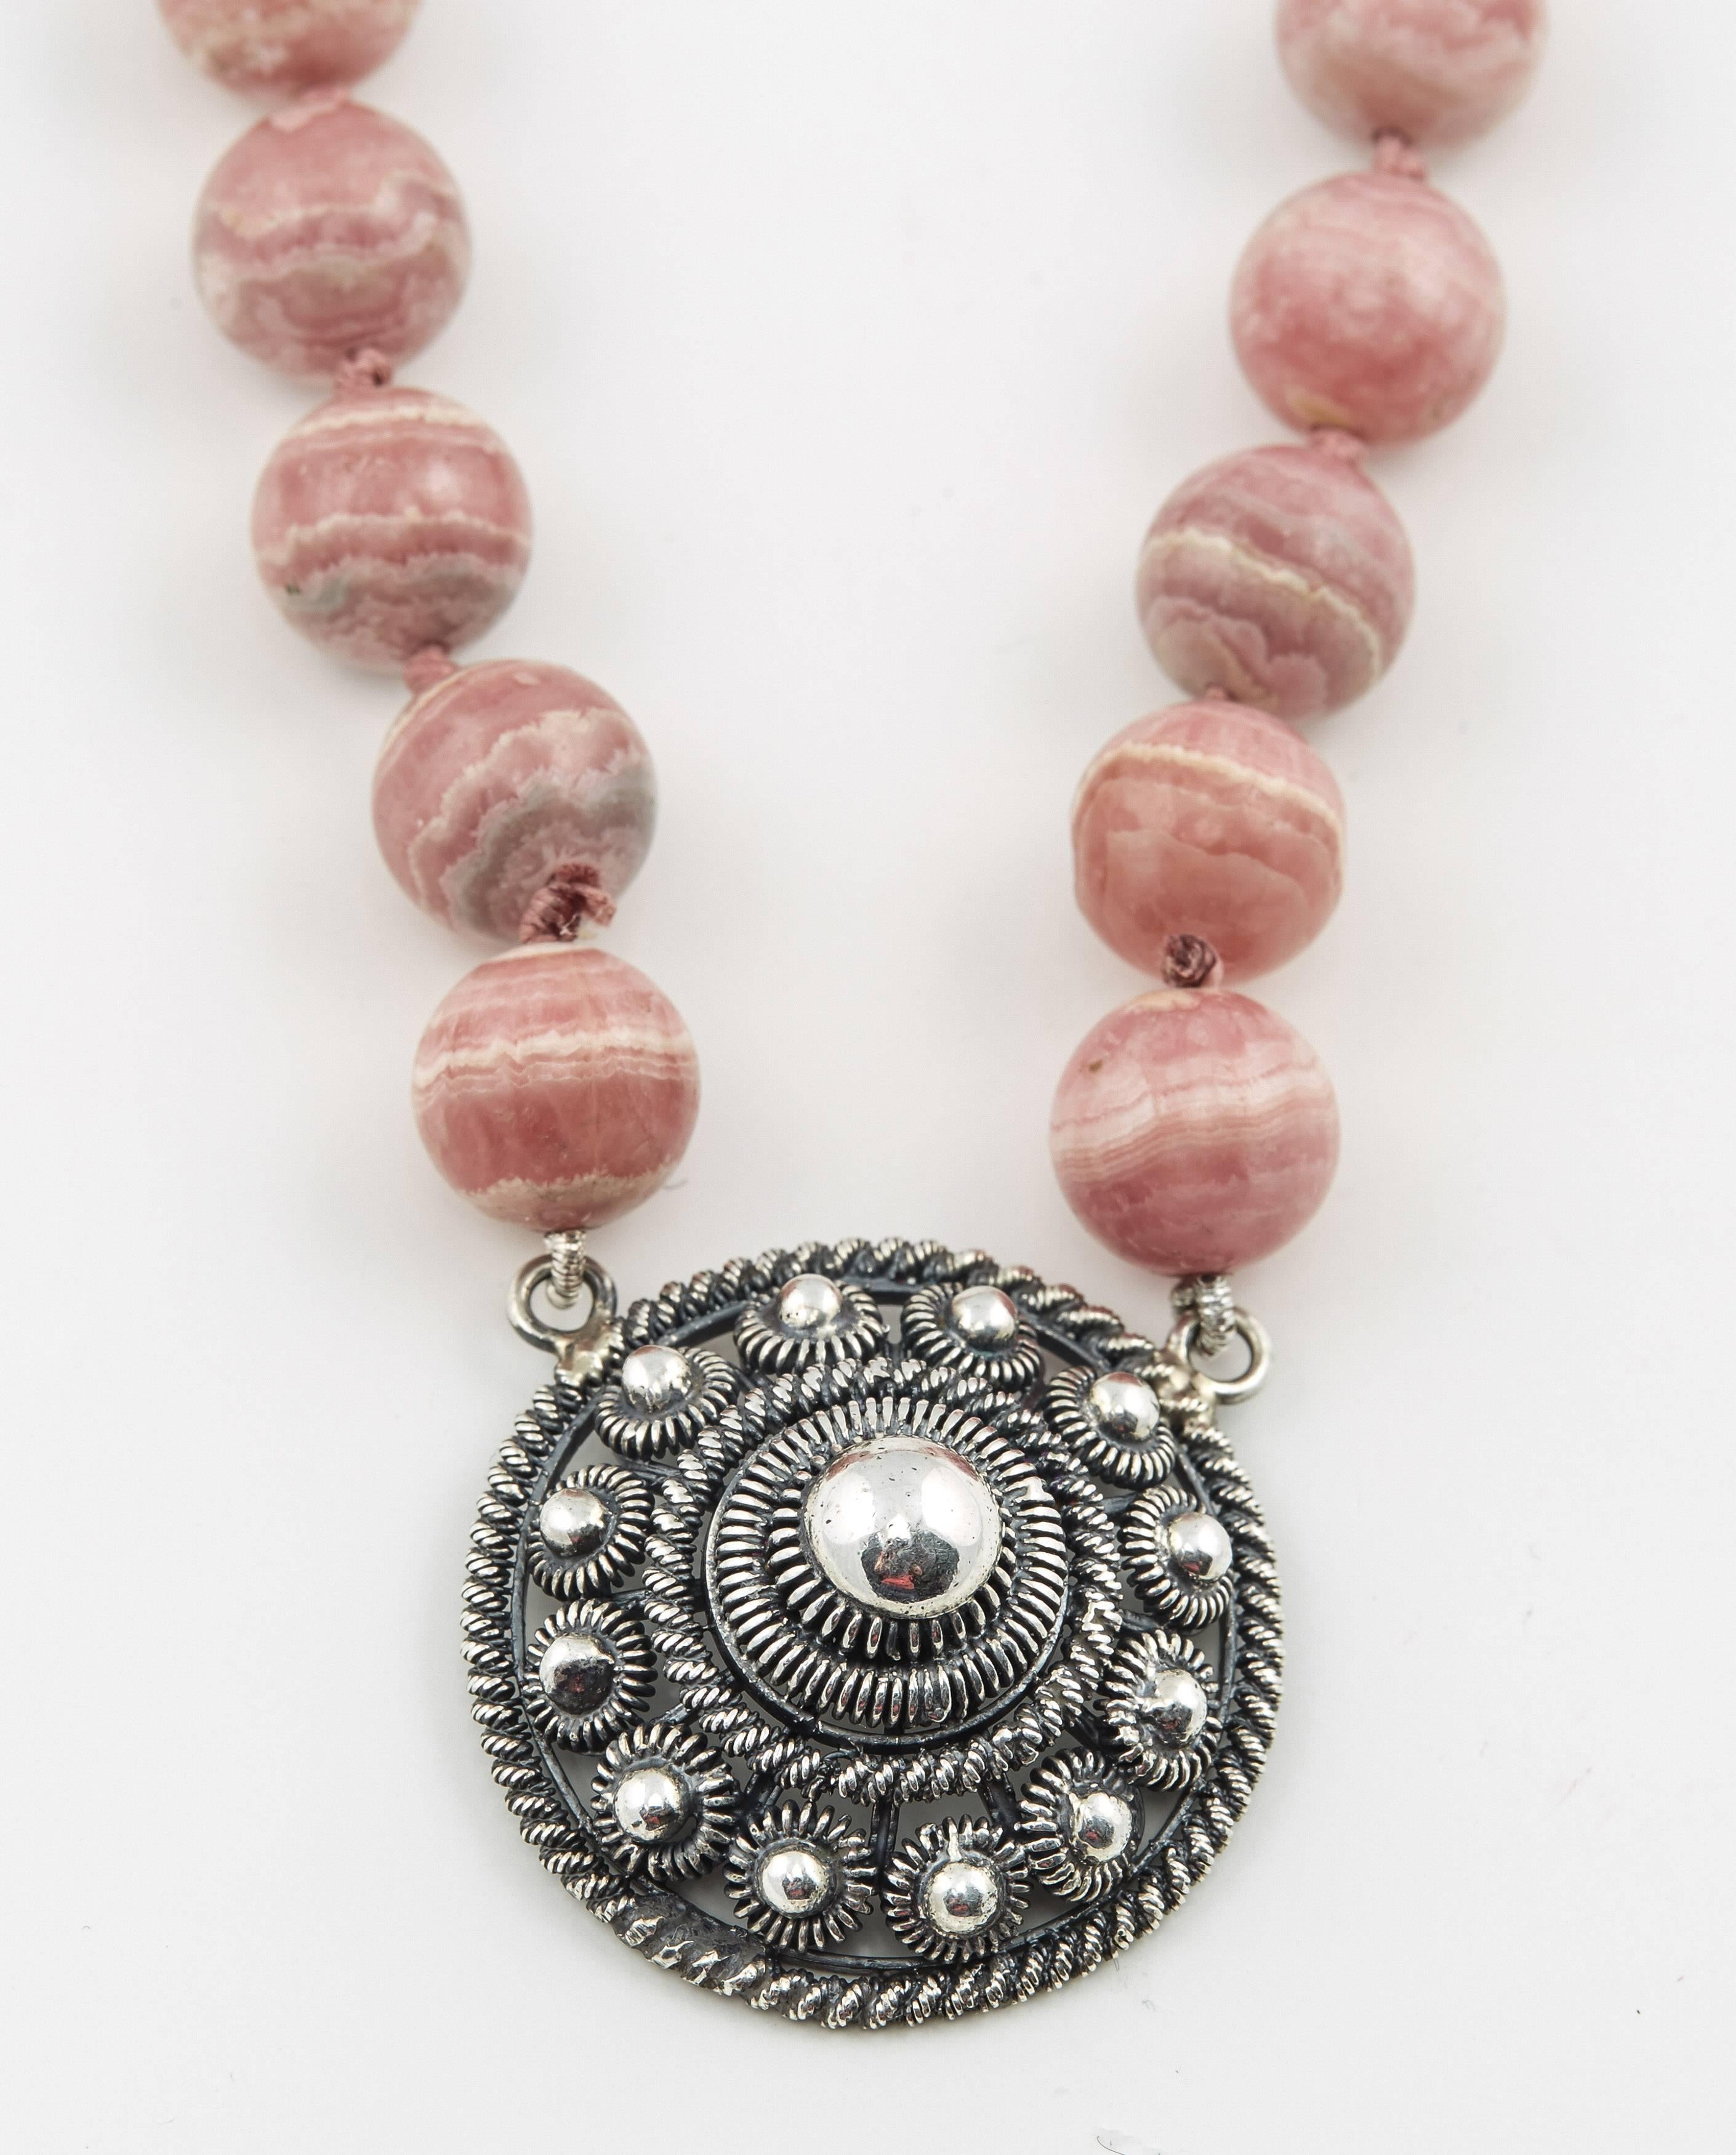 Collier distinctif composé de soixante-cinq perles de rhodochrosite naturelle attachées à un pendentif en argent filigrané, avec un fermoir en argent. 

20ème siècle

28 po (71,1 cm) de long, le pendentif, 1 ¼ po (3,2 cm) de diam.   

Trouvée en